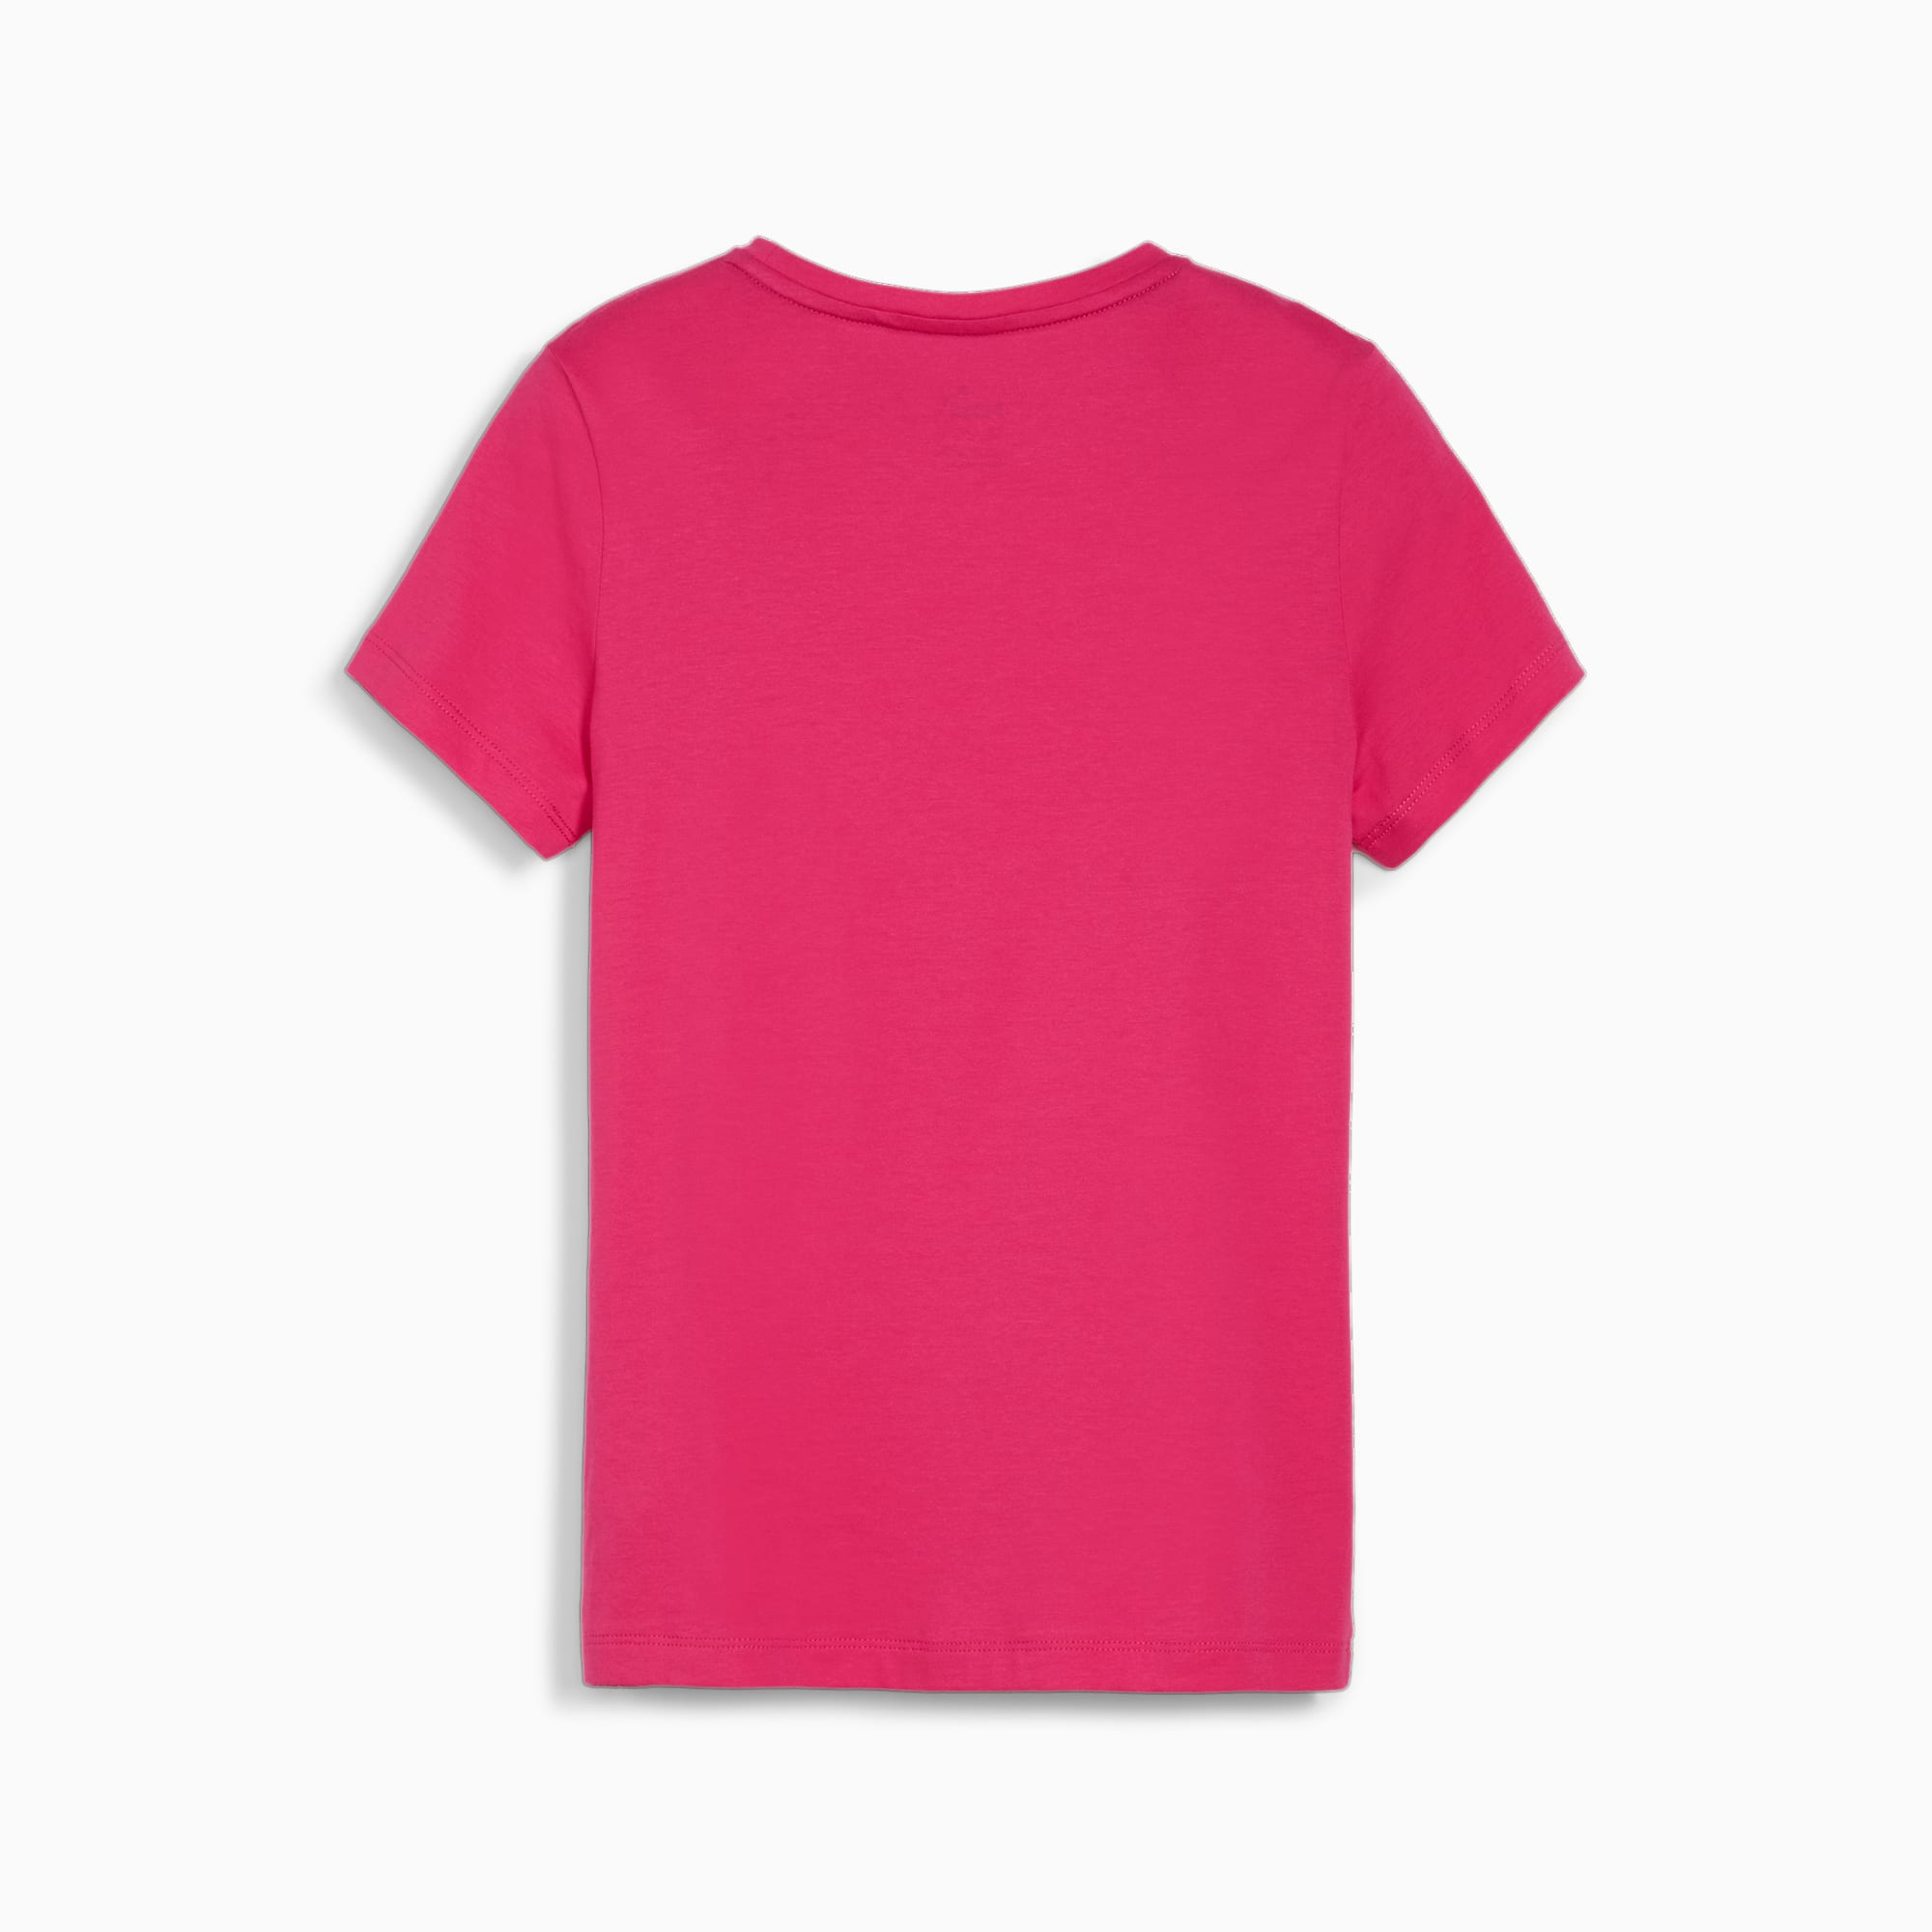 PUMA ESS Logo Tee G FALSE T-shirt - Garnet Rose